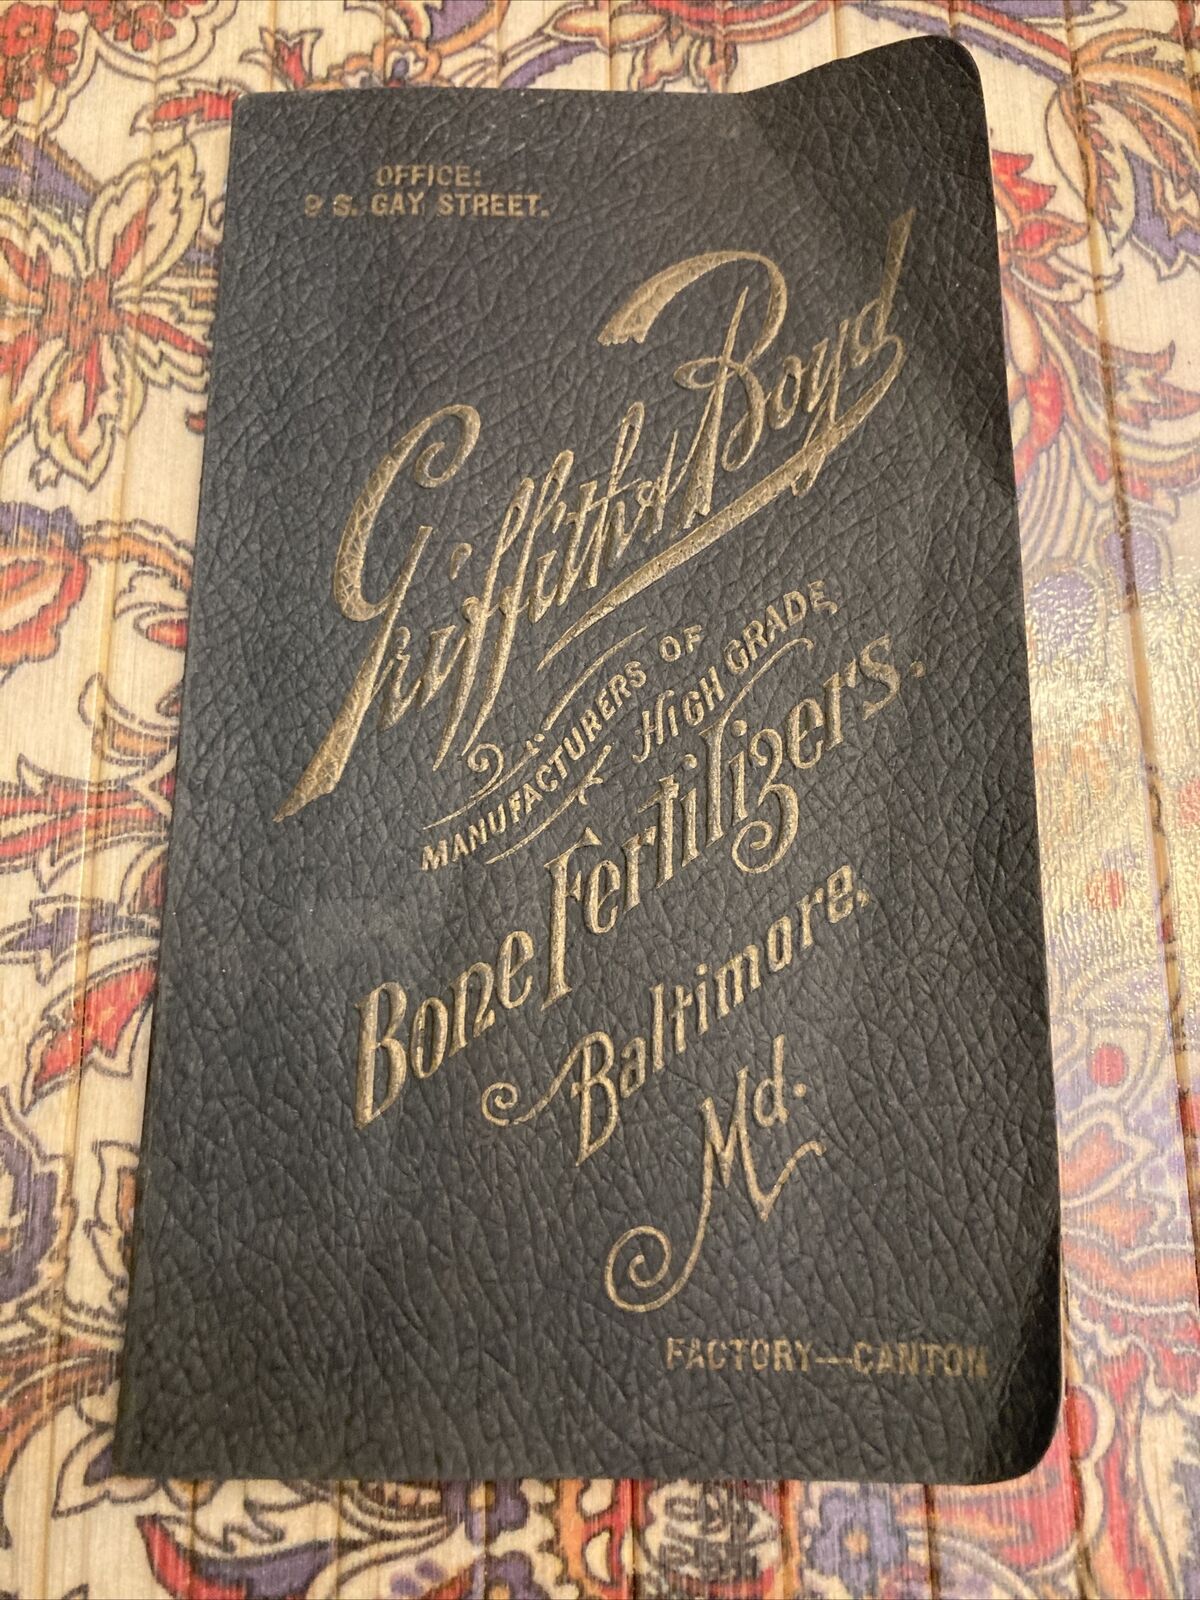 1902 Baltimore Calendar Book: Griffith & Boyd Bone fertilizers Gay St. Maryland